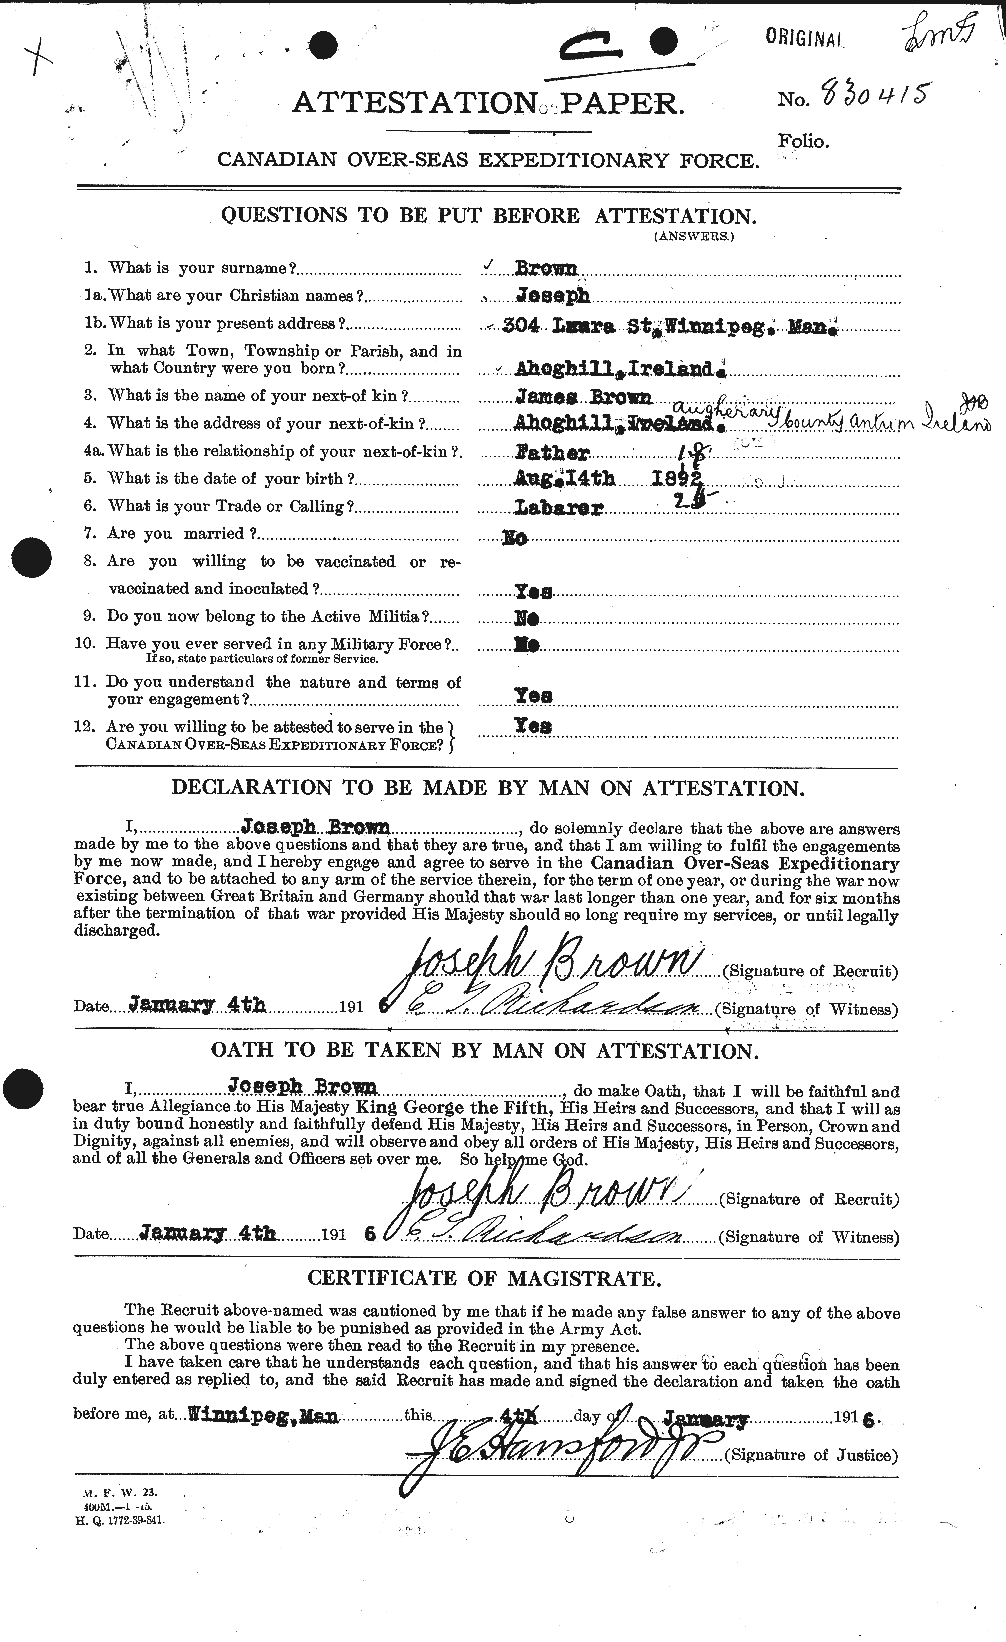 Dossiers du Personnel de la Première Guerre mondiale - CEC 265927a